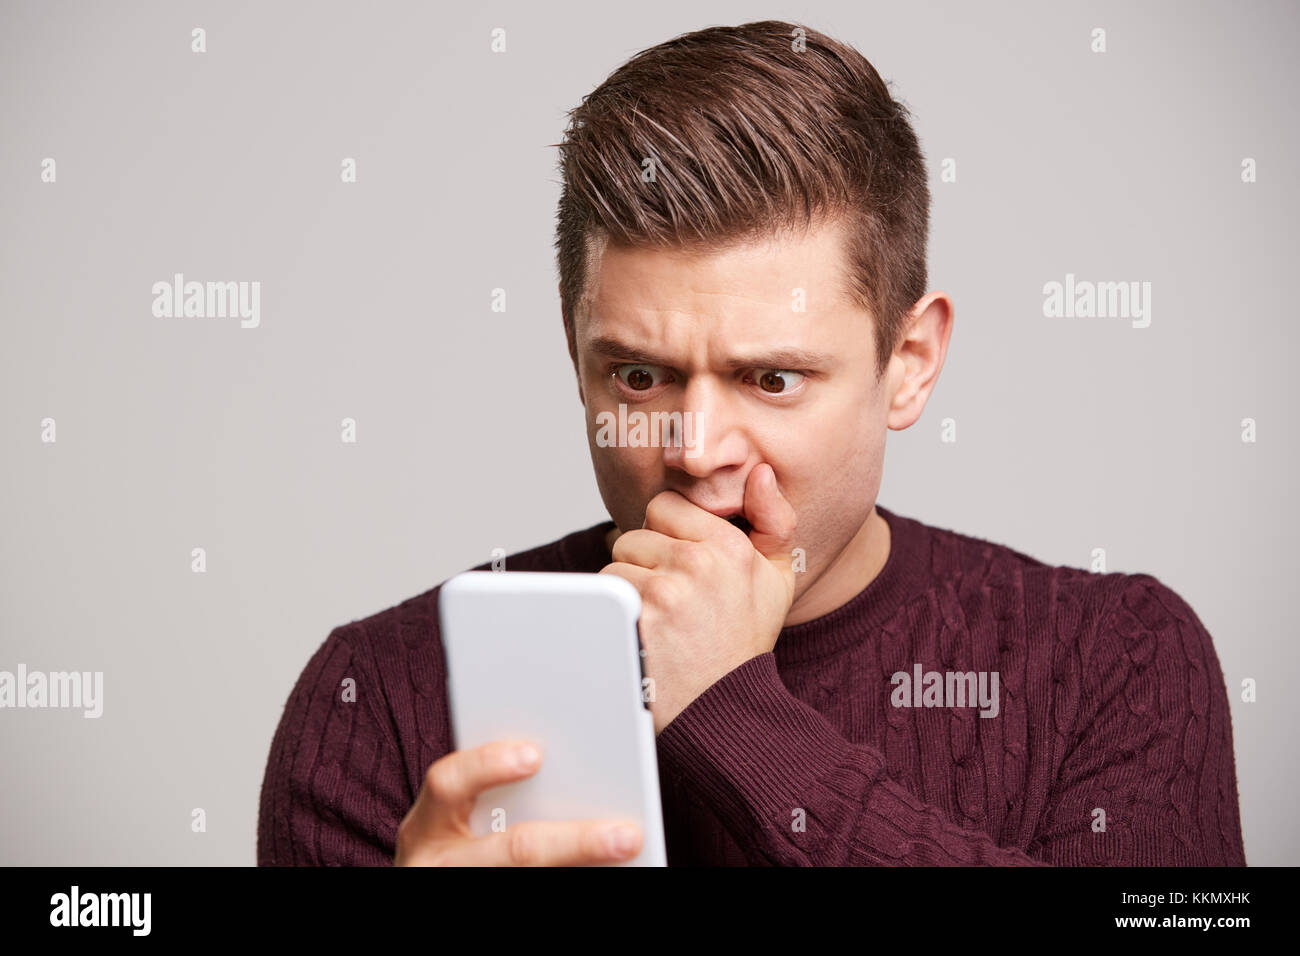 Retrato de un joven blanco conmocionado utilizando un smartphone Foto de stock